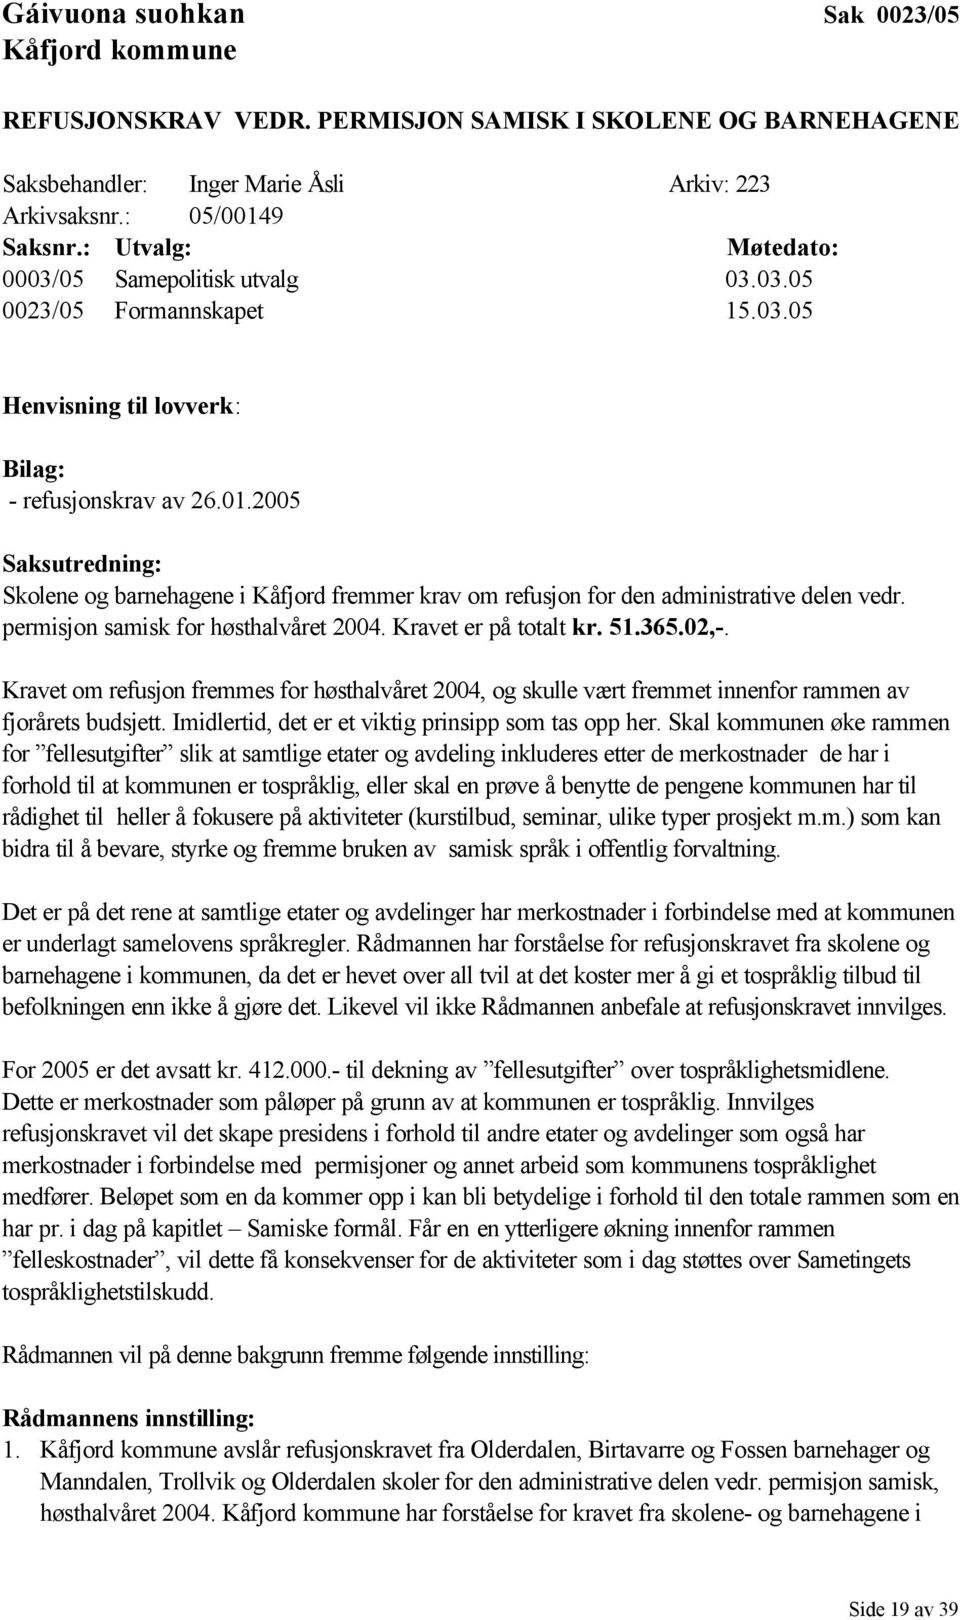 2005 Saksutredning: Skolene og barnehagene i Kåfjord fremmer krav om refusjon for den administrative delen vedr. permisjon samisk for høsthalvåret 2004. Kravet er på totalt kr. 51.365.02,-.